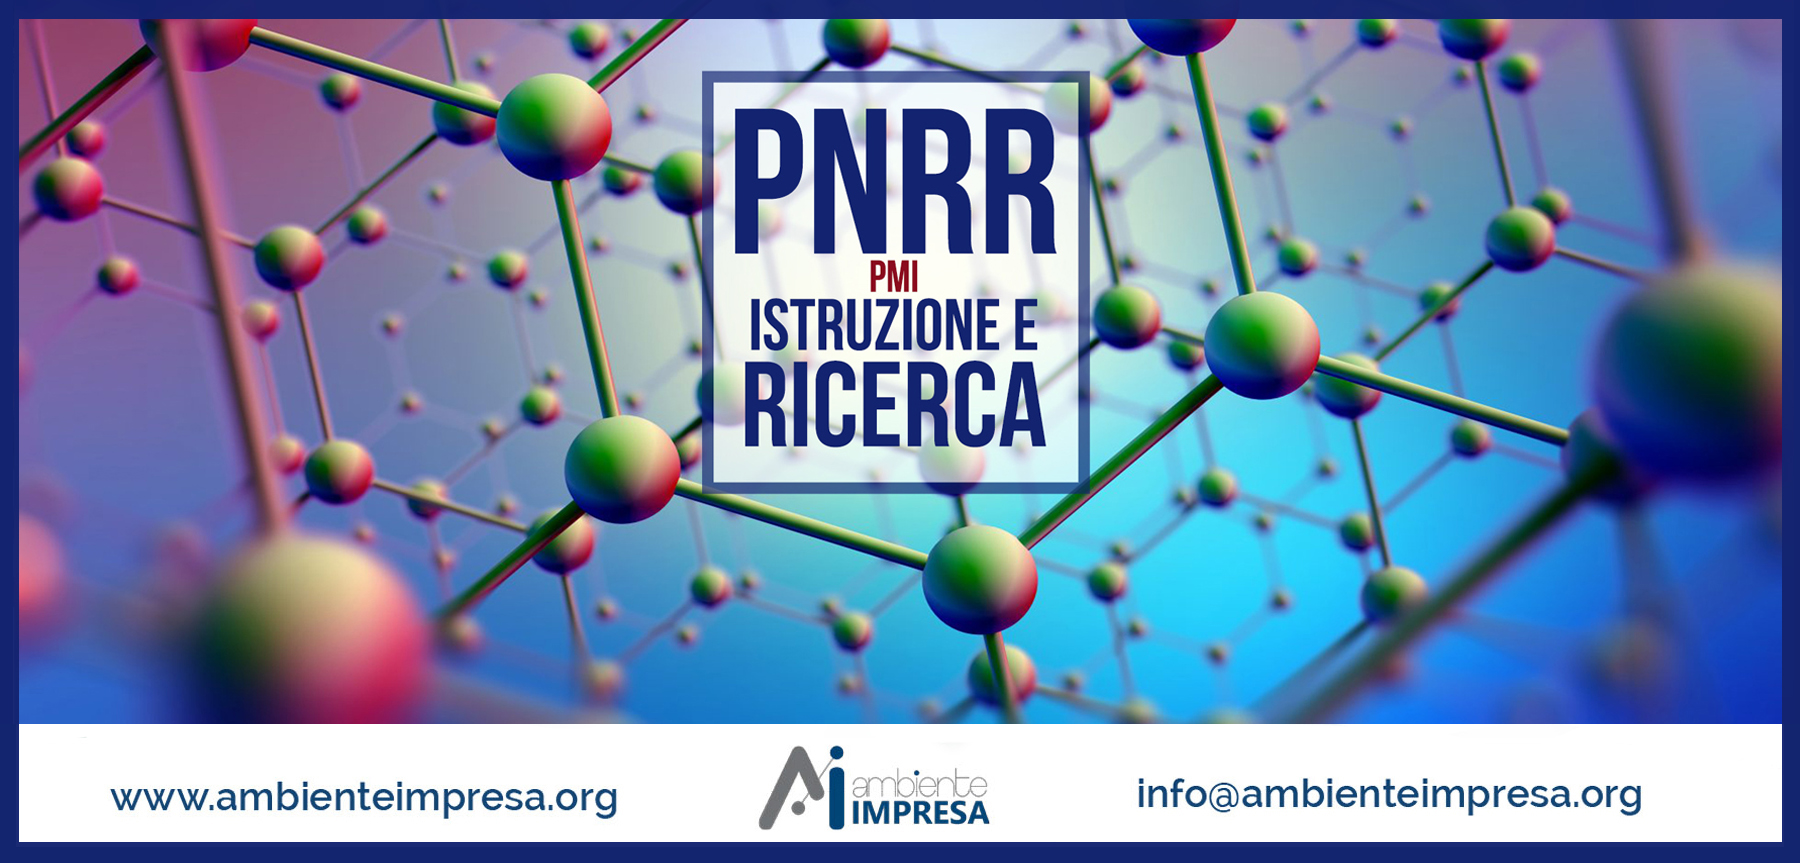 PNRR - MISSIONE 4 - ISTRUZIONE E RICERCA - Ambiente Impresa srl - Cagliari